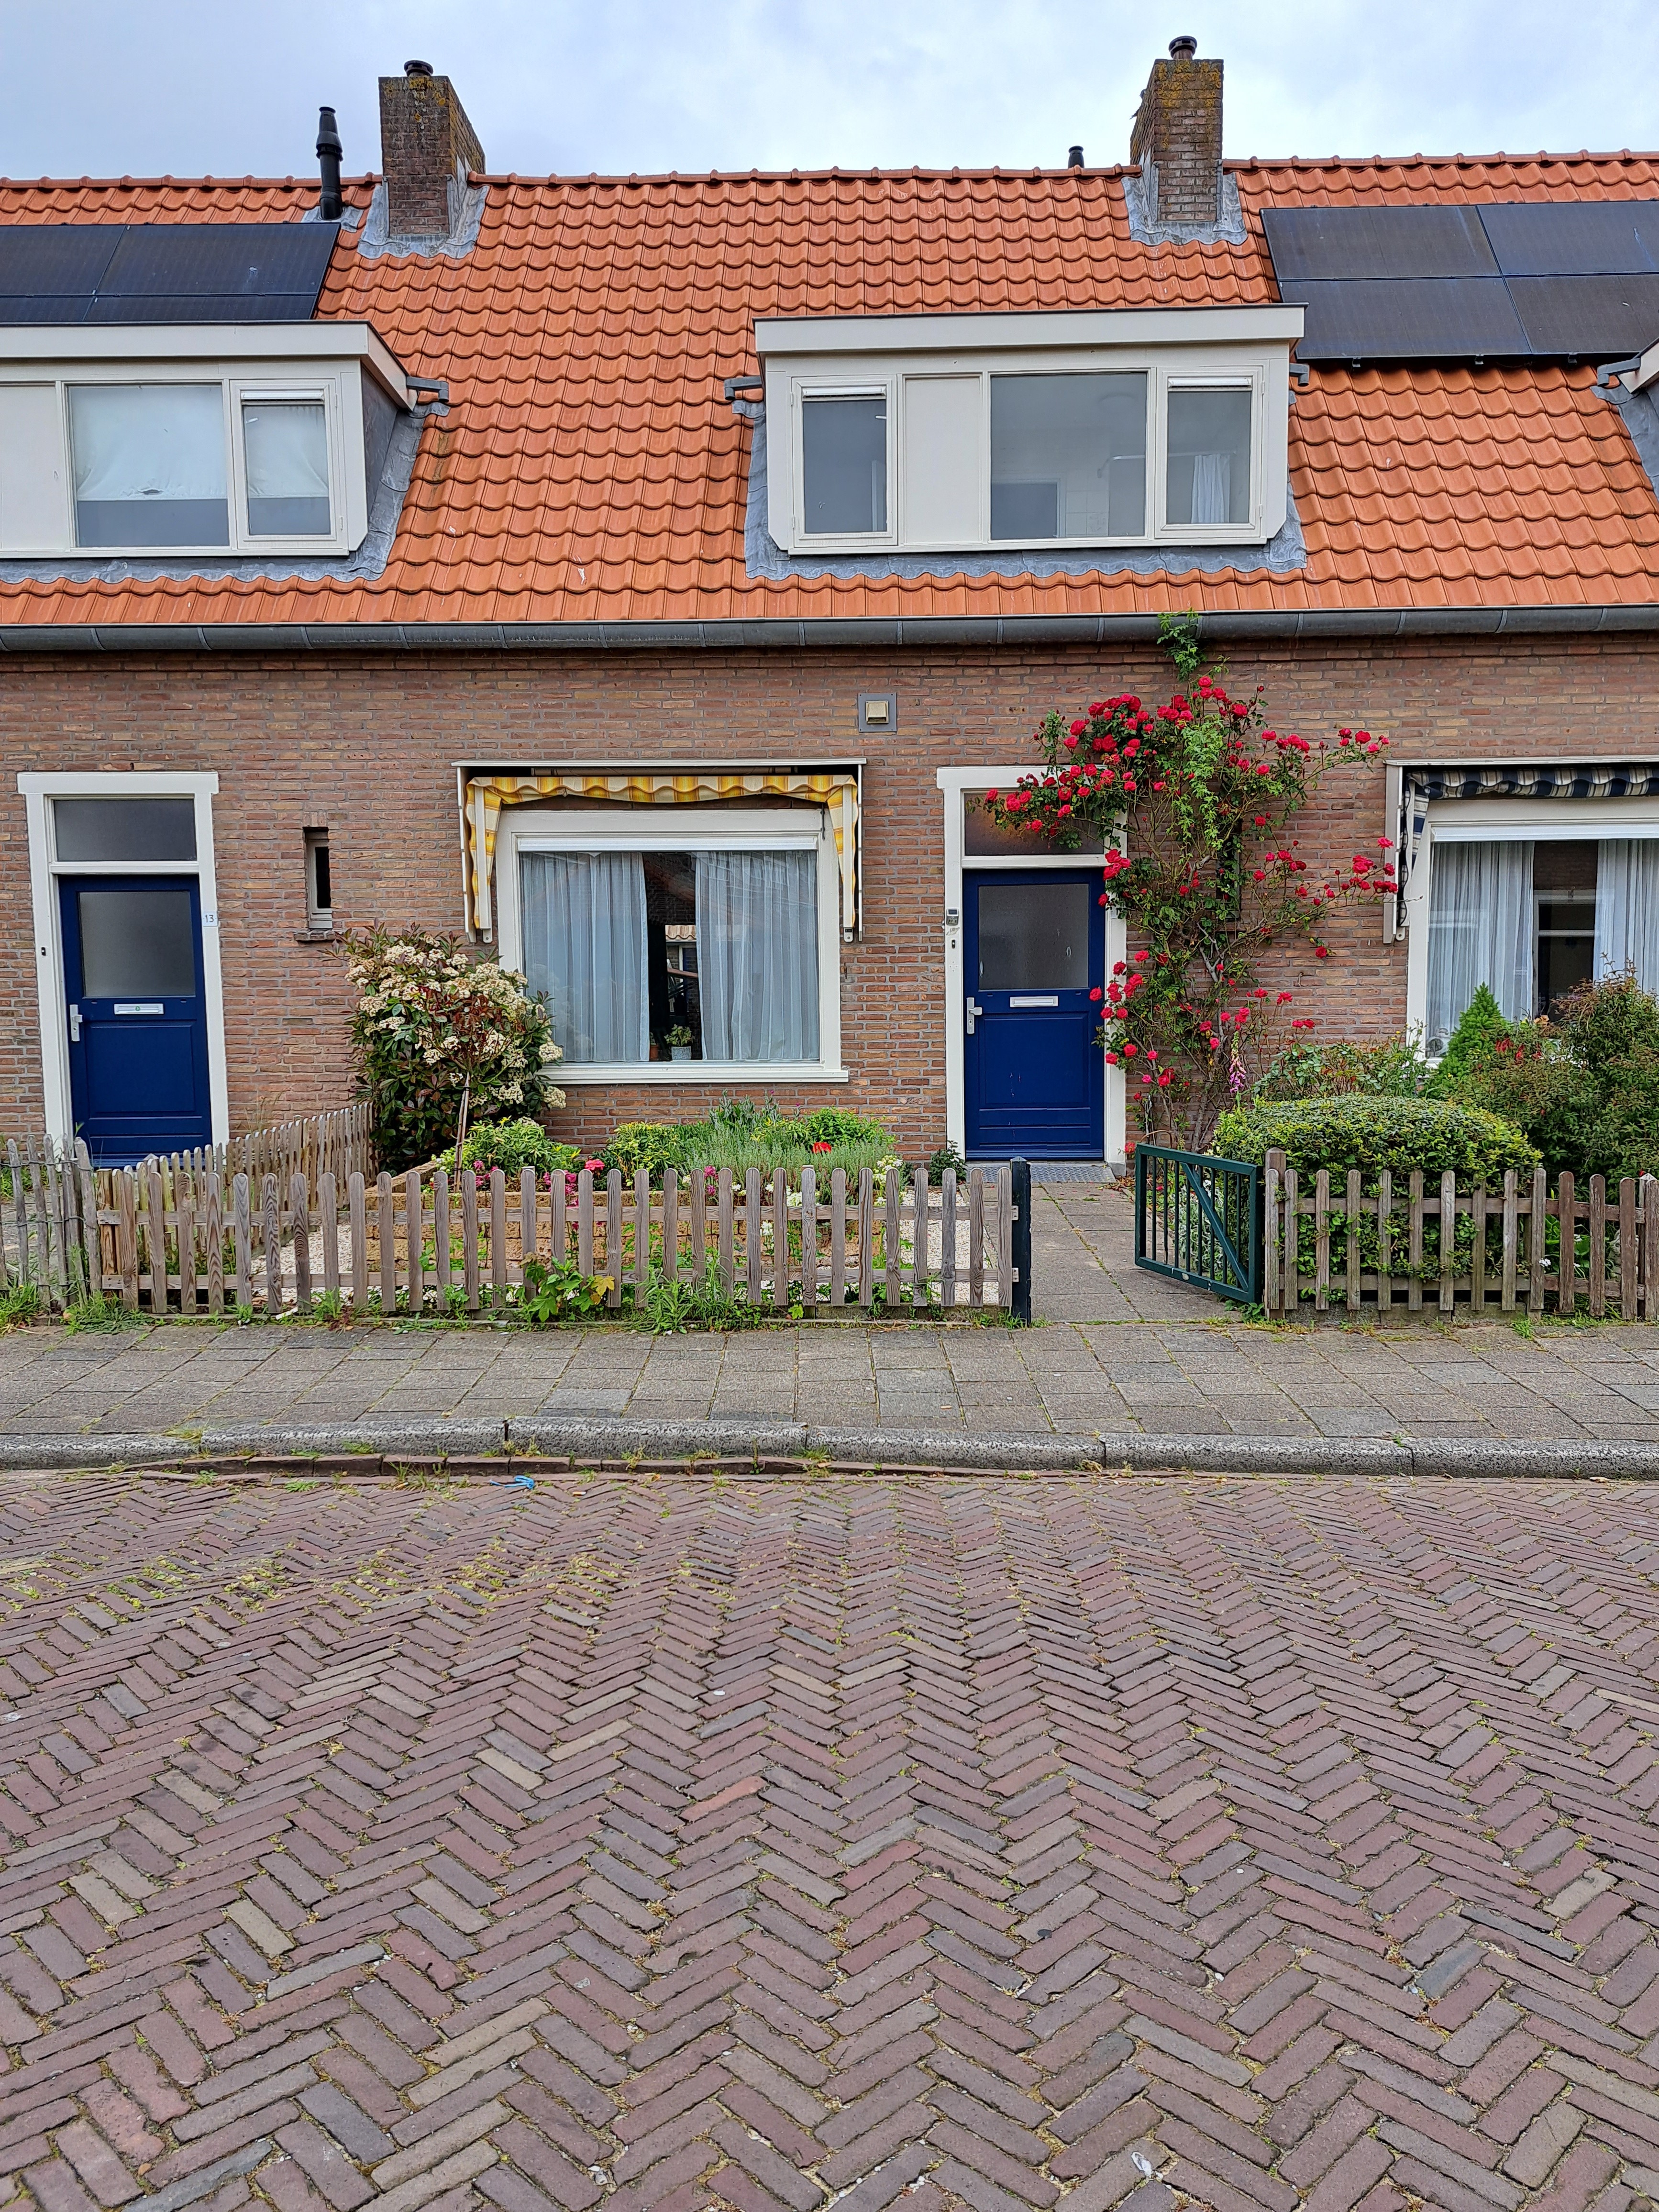 Van Speijkstraat 11, 2224 SH Katwijk aan Zee, Nederland